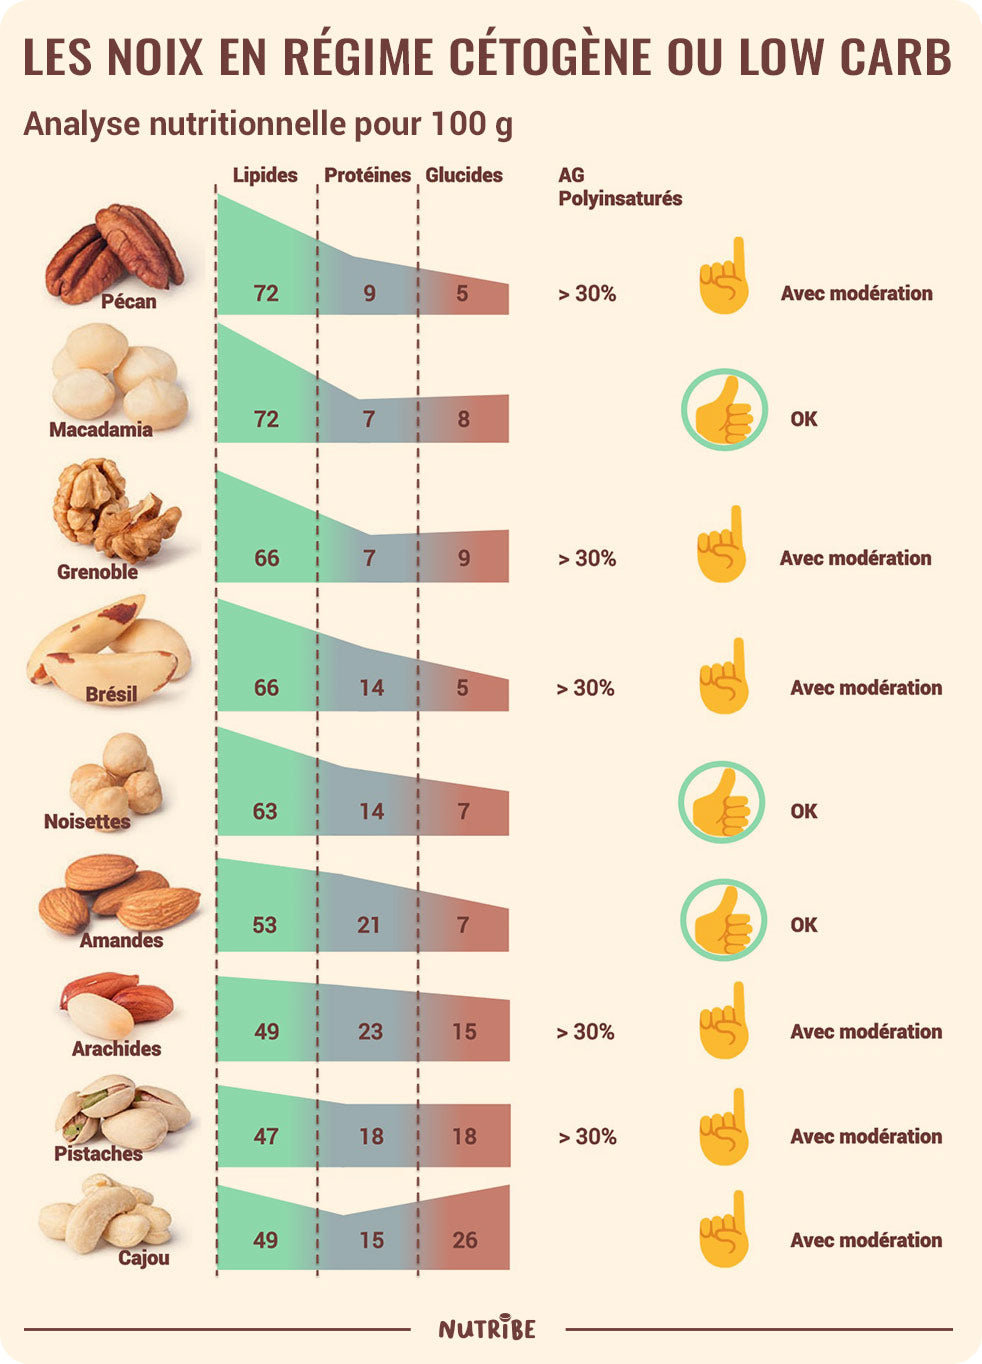 Les noix en régime cétogène et low carb (analyse nutritionnelle)